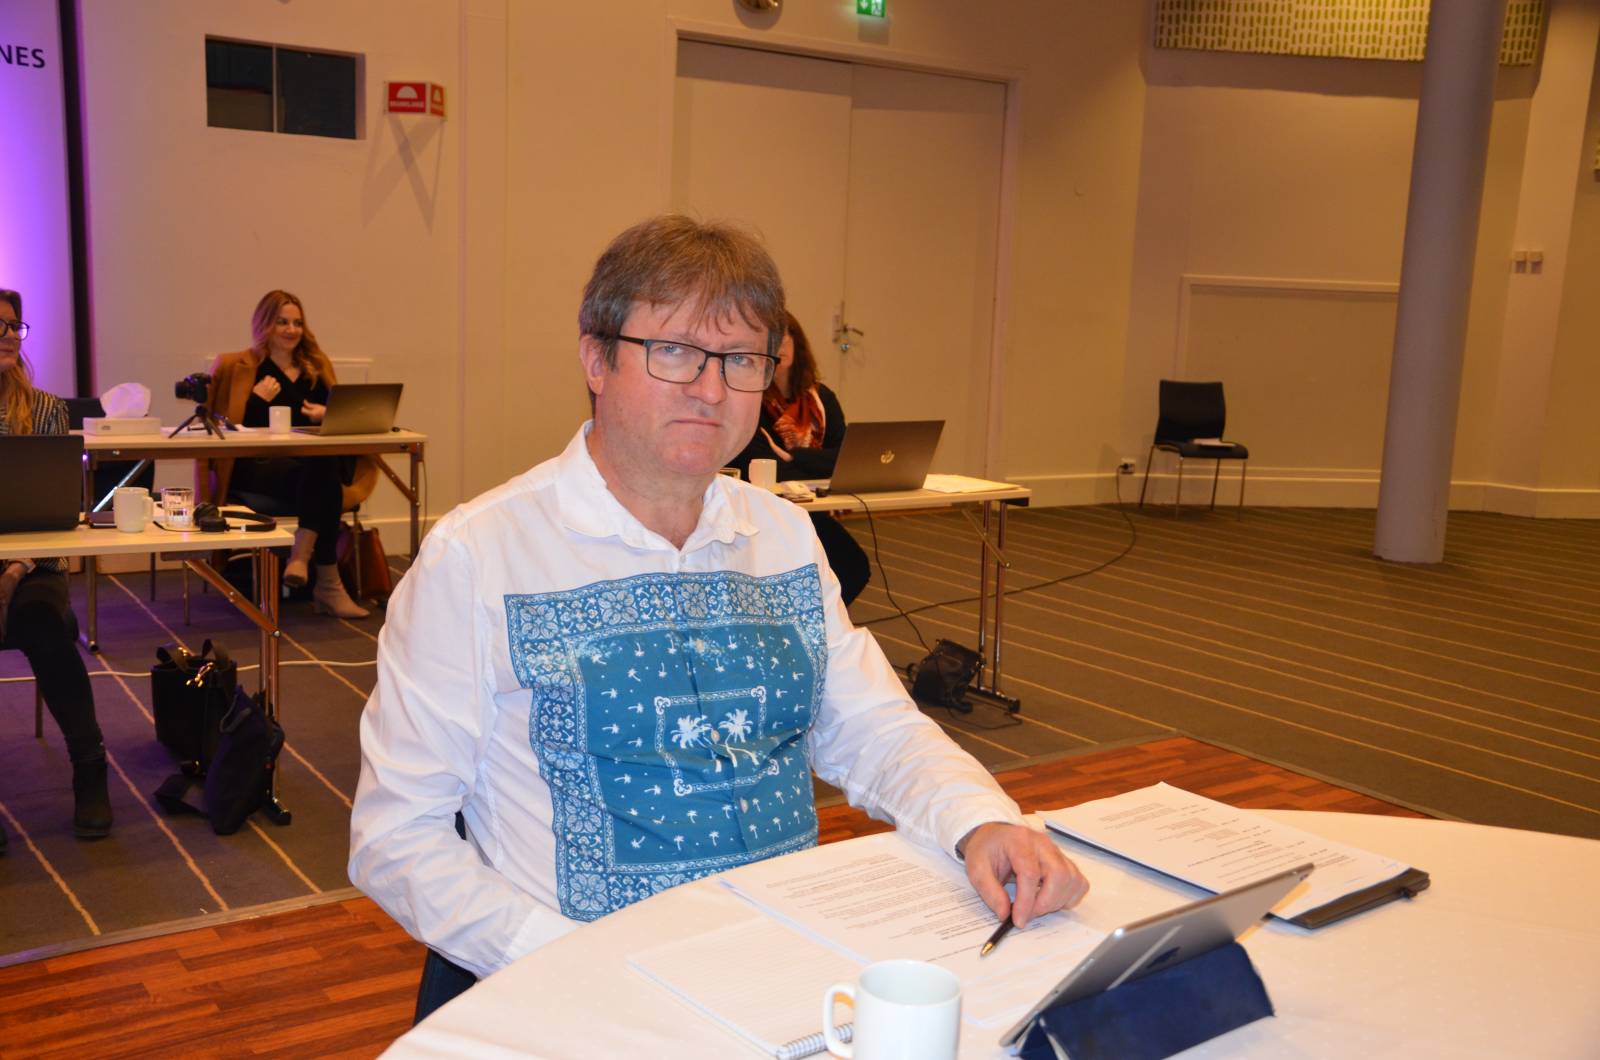 Kongressen del 1, Roy Erling Furres siste før pensjonisttilværelsen venter. Foto: Mette Møllerop